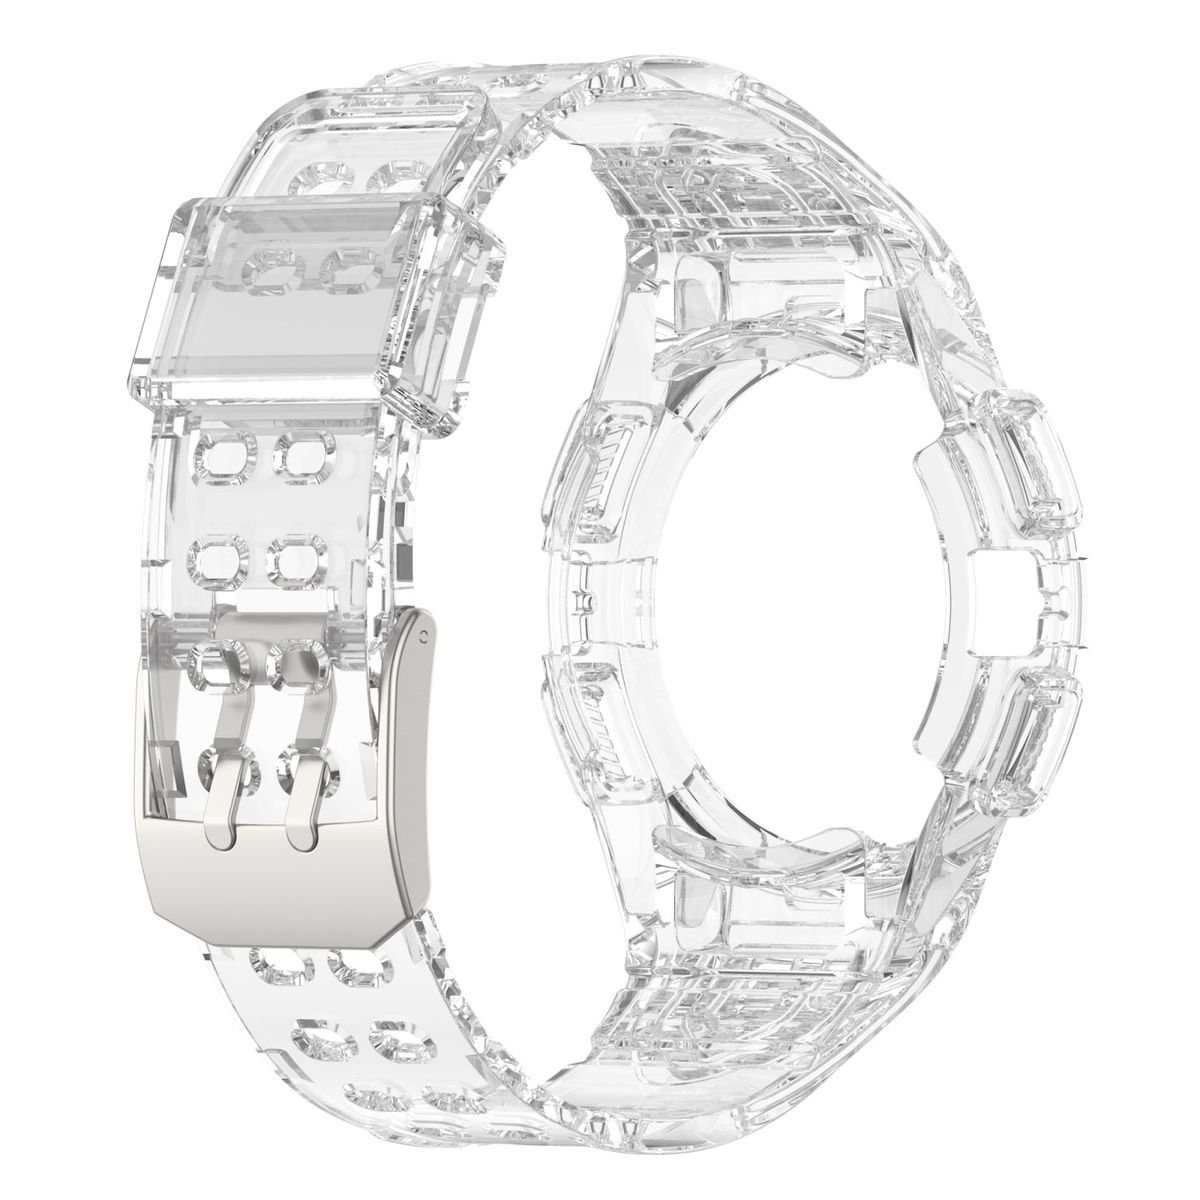 Galaxy Schutz 44mm mit Wigento Transparent Samsung Smartwatch-Armband Gehäuse 6 Watch Armband Für